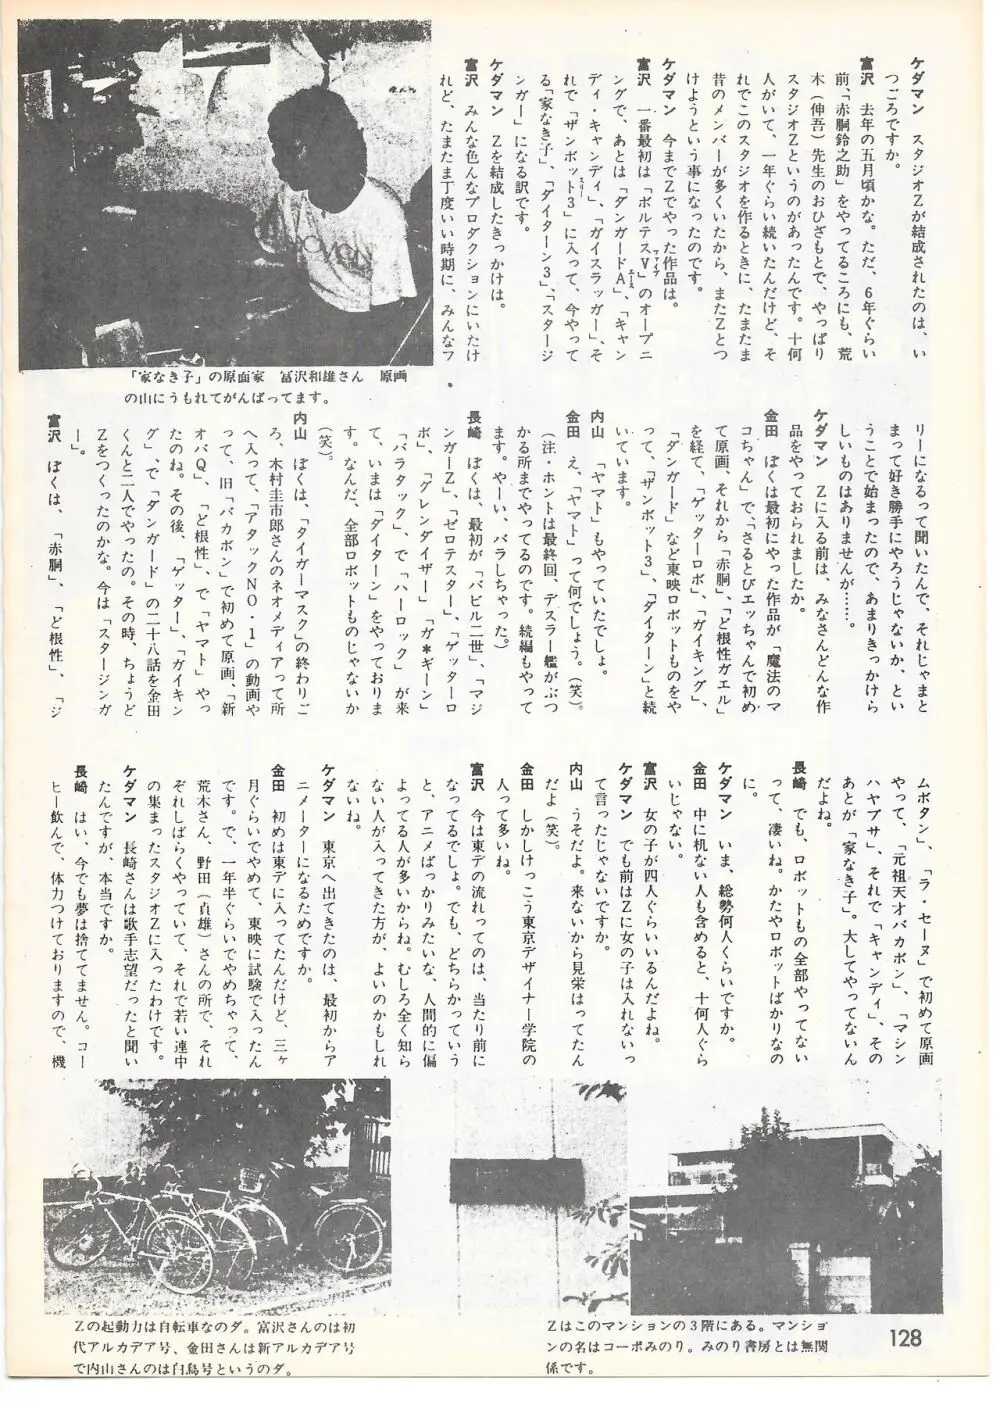 THE ANIMATOR 1 金田伊功特集号 123ページ